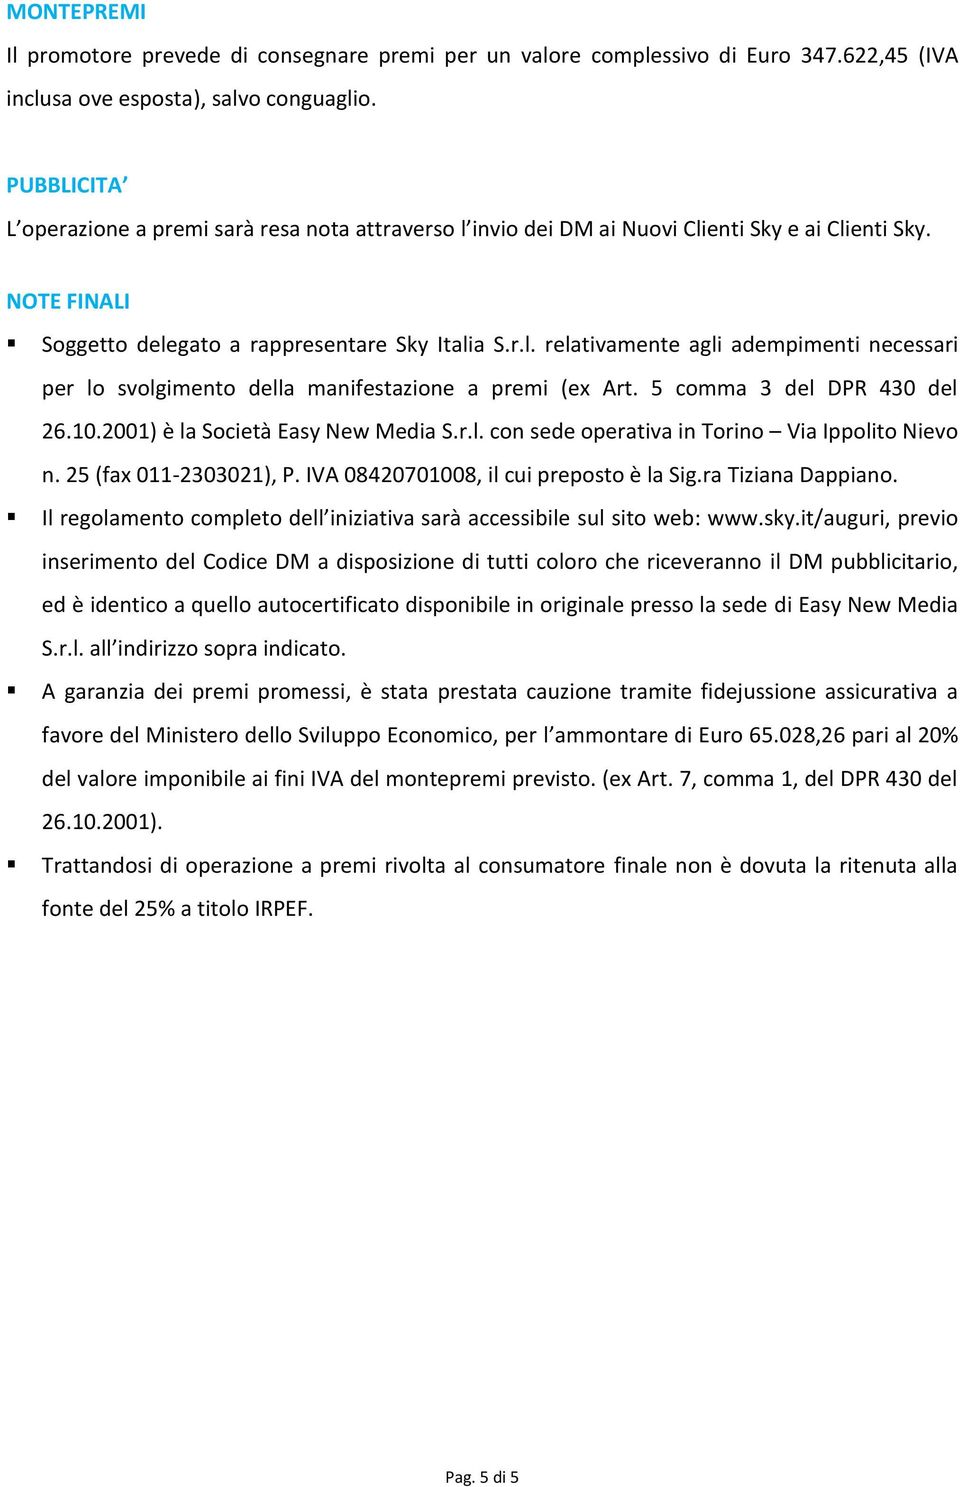 5 comma 3 del DPR 430 del 26.10.2001) è la Società Easy New Media S.r.l. con sede operativa in Torino Via Ippolito Nievo n. 25 (fax 011-2303021), P. IVA 08420701008, il cui preposto è la Sig.